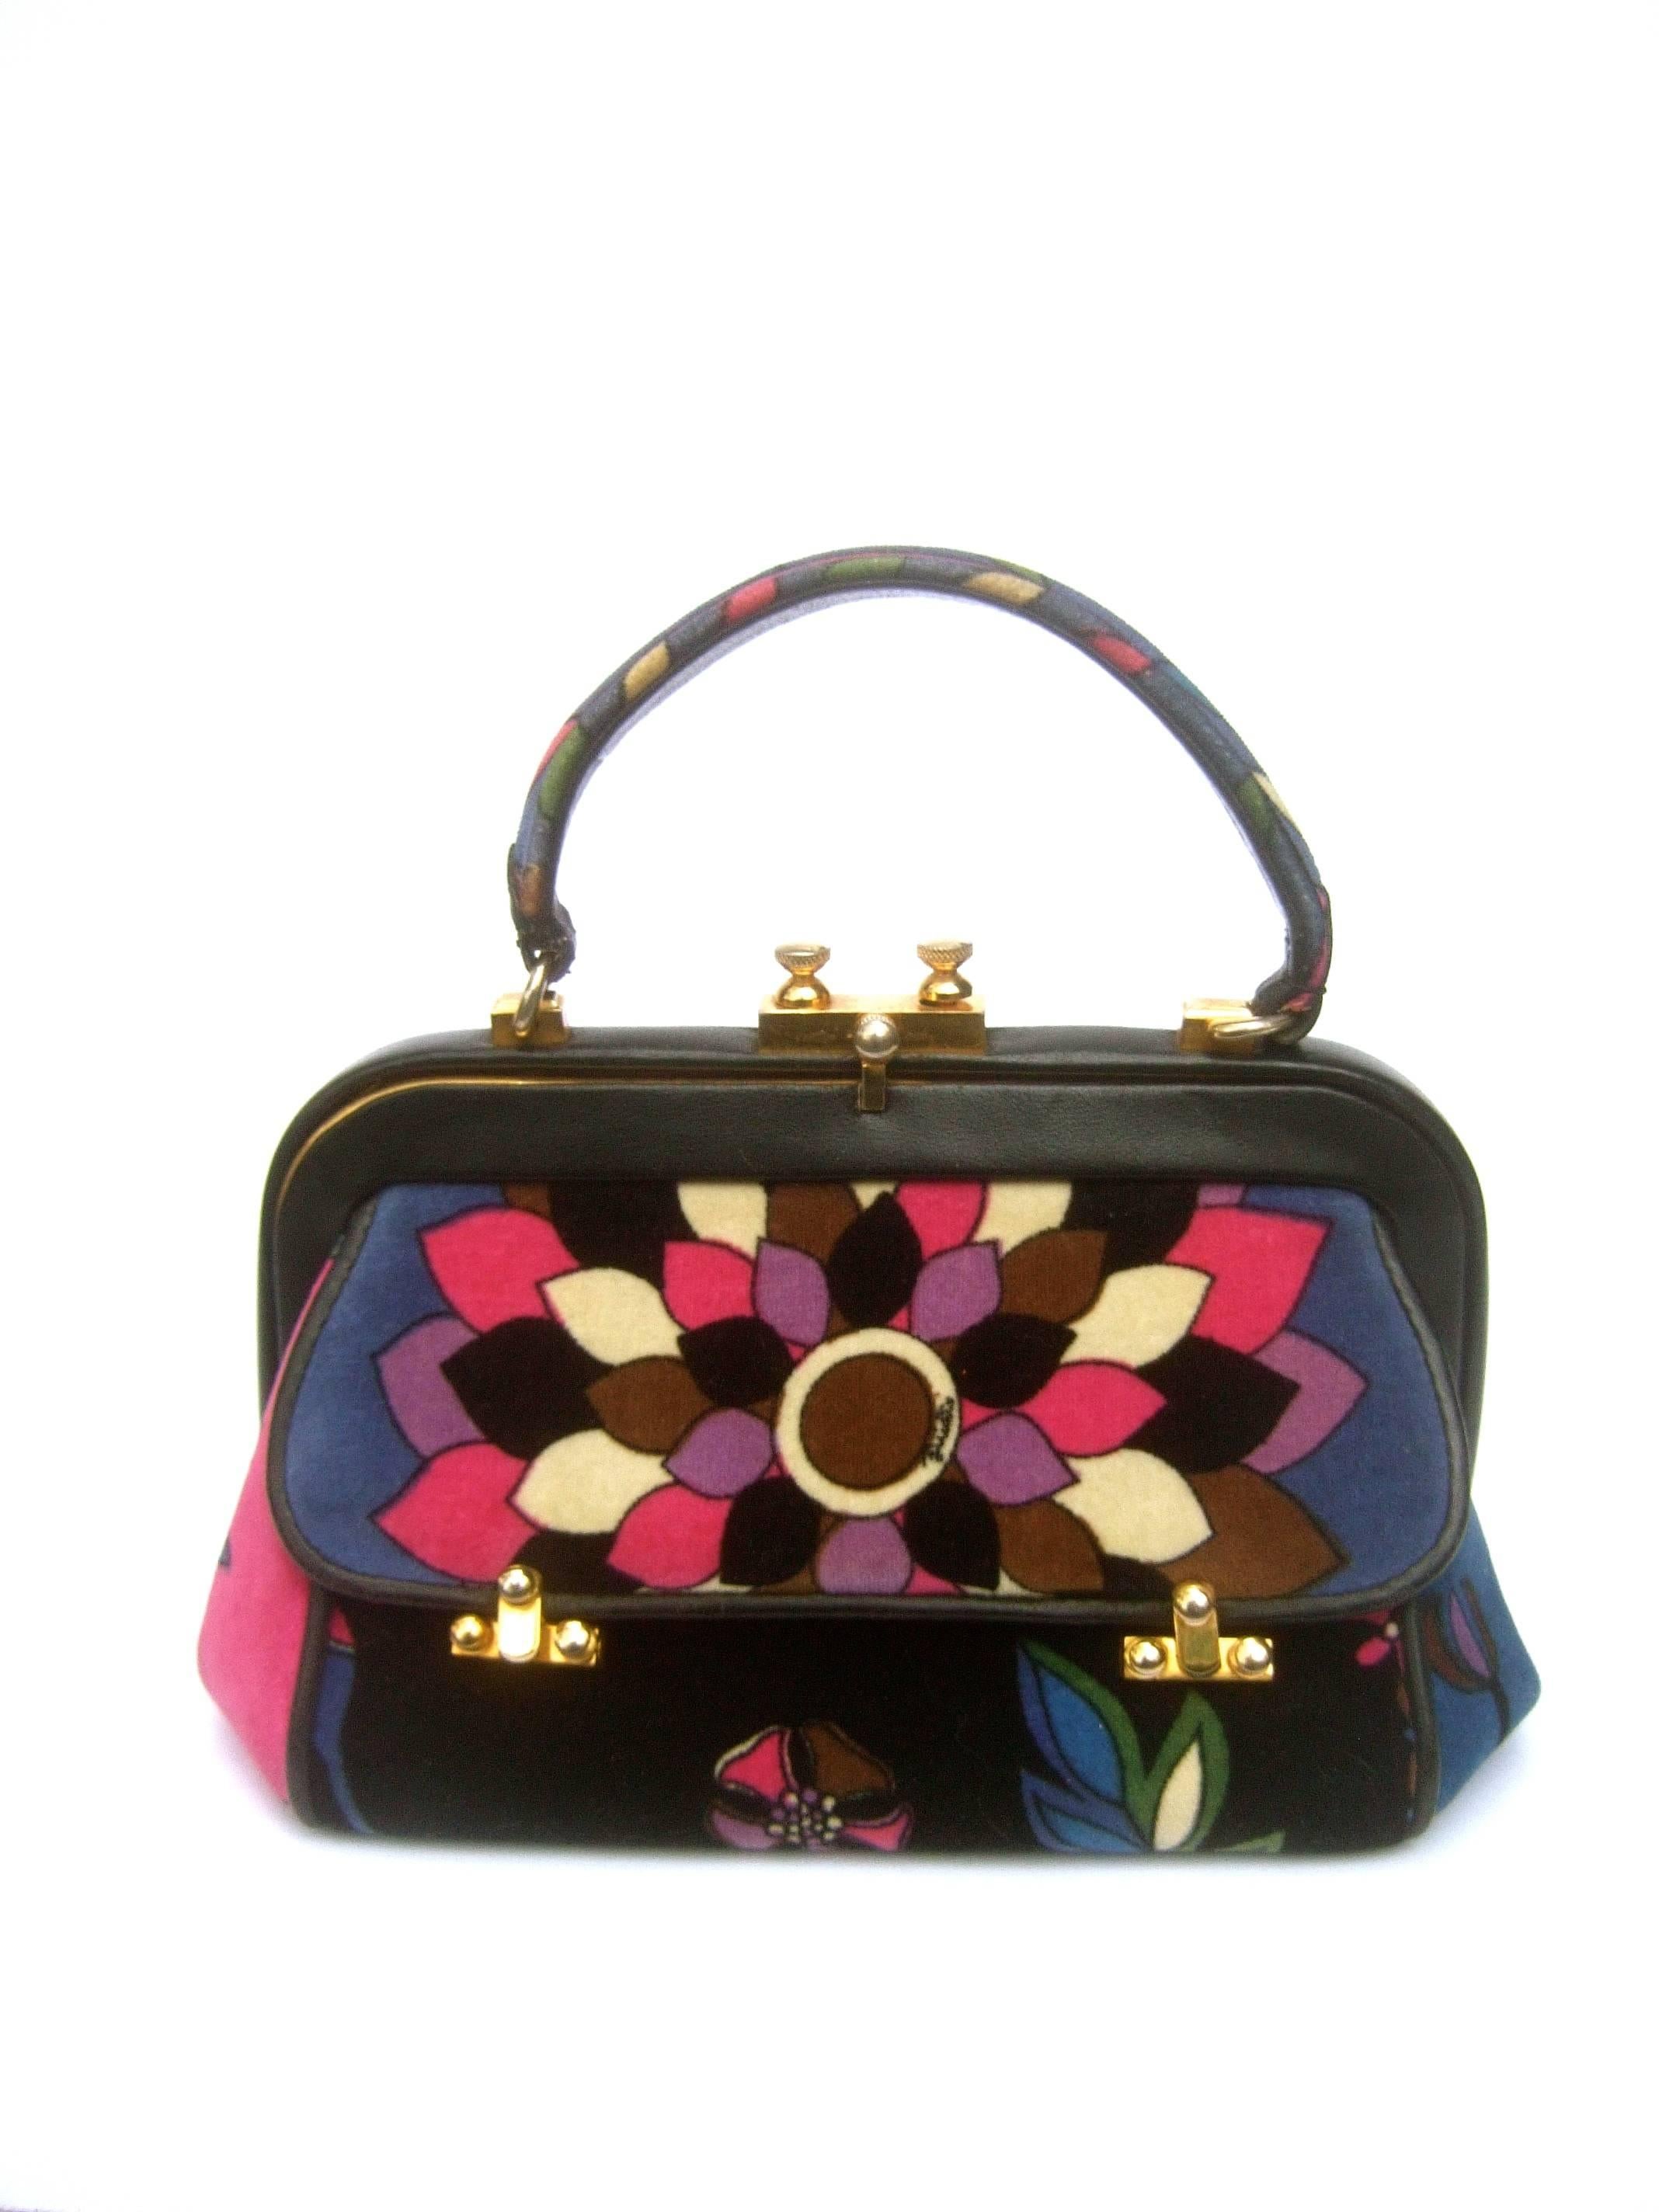 Emilio Pucci Rare Velvet Leather Trim Handbag ca 1970 4